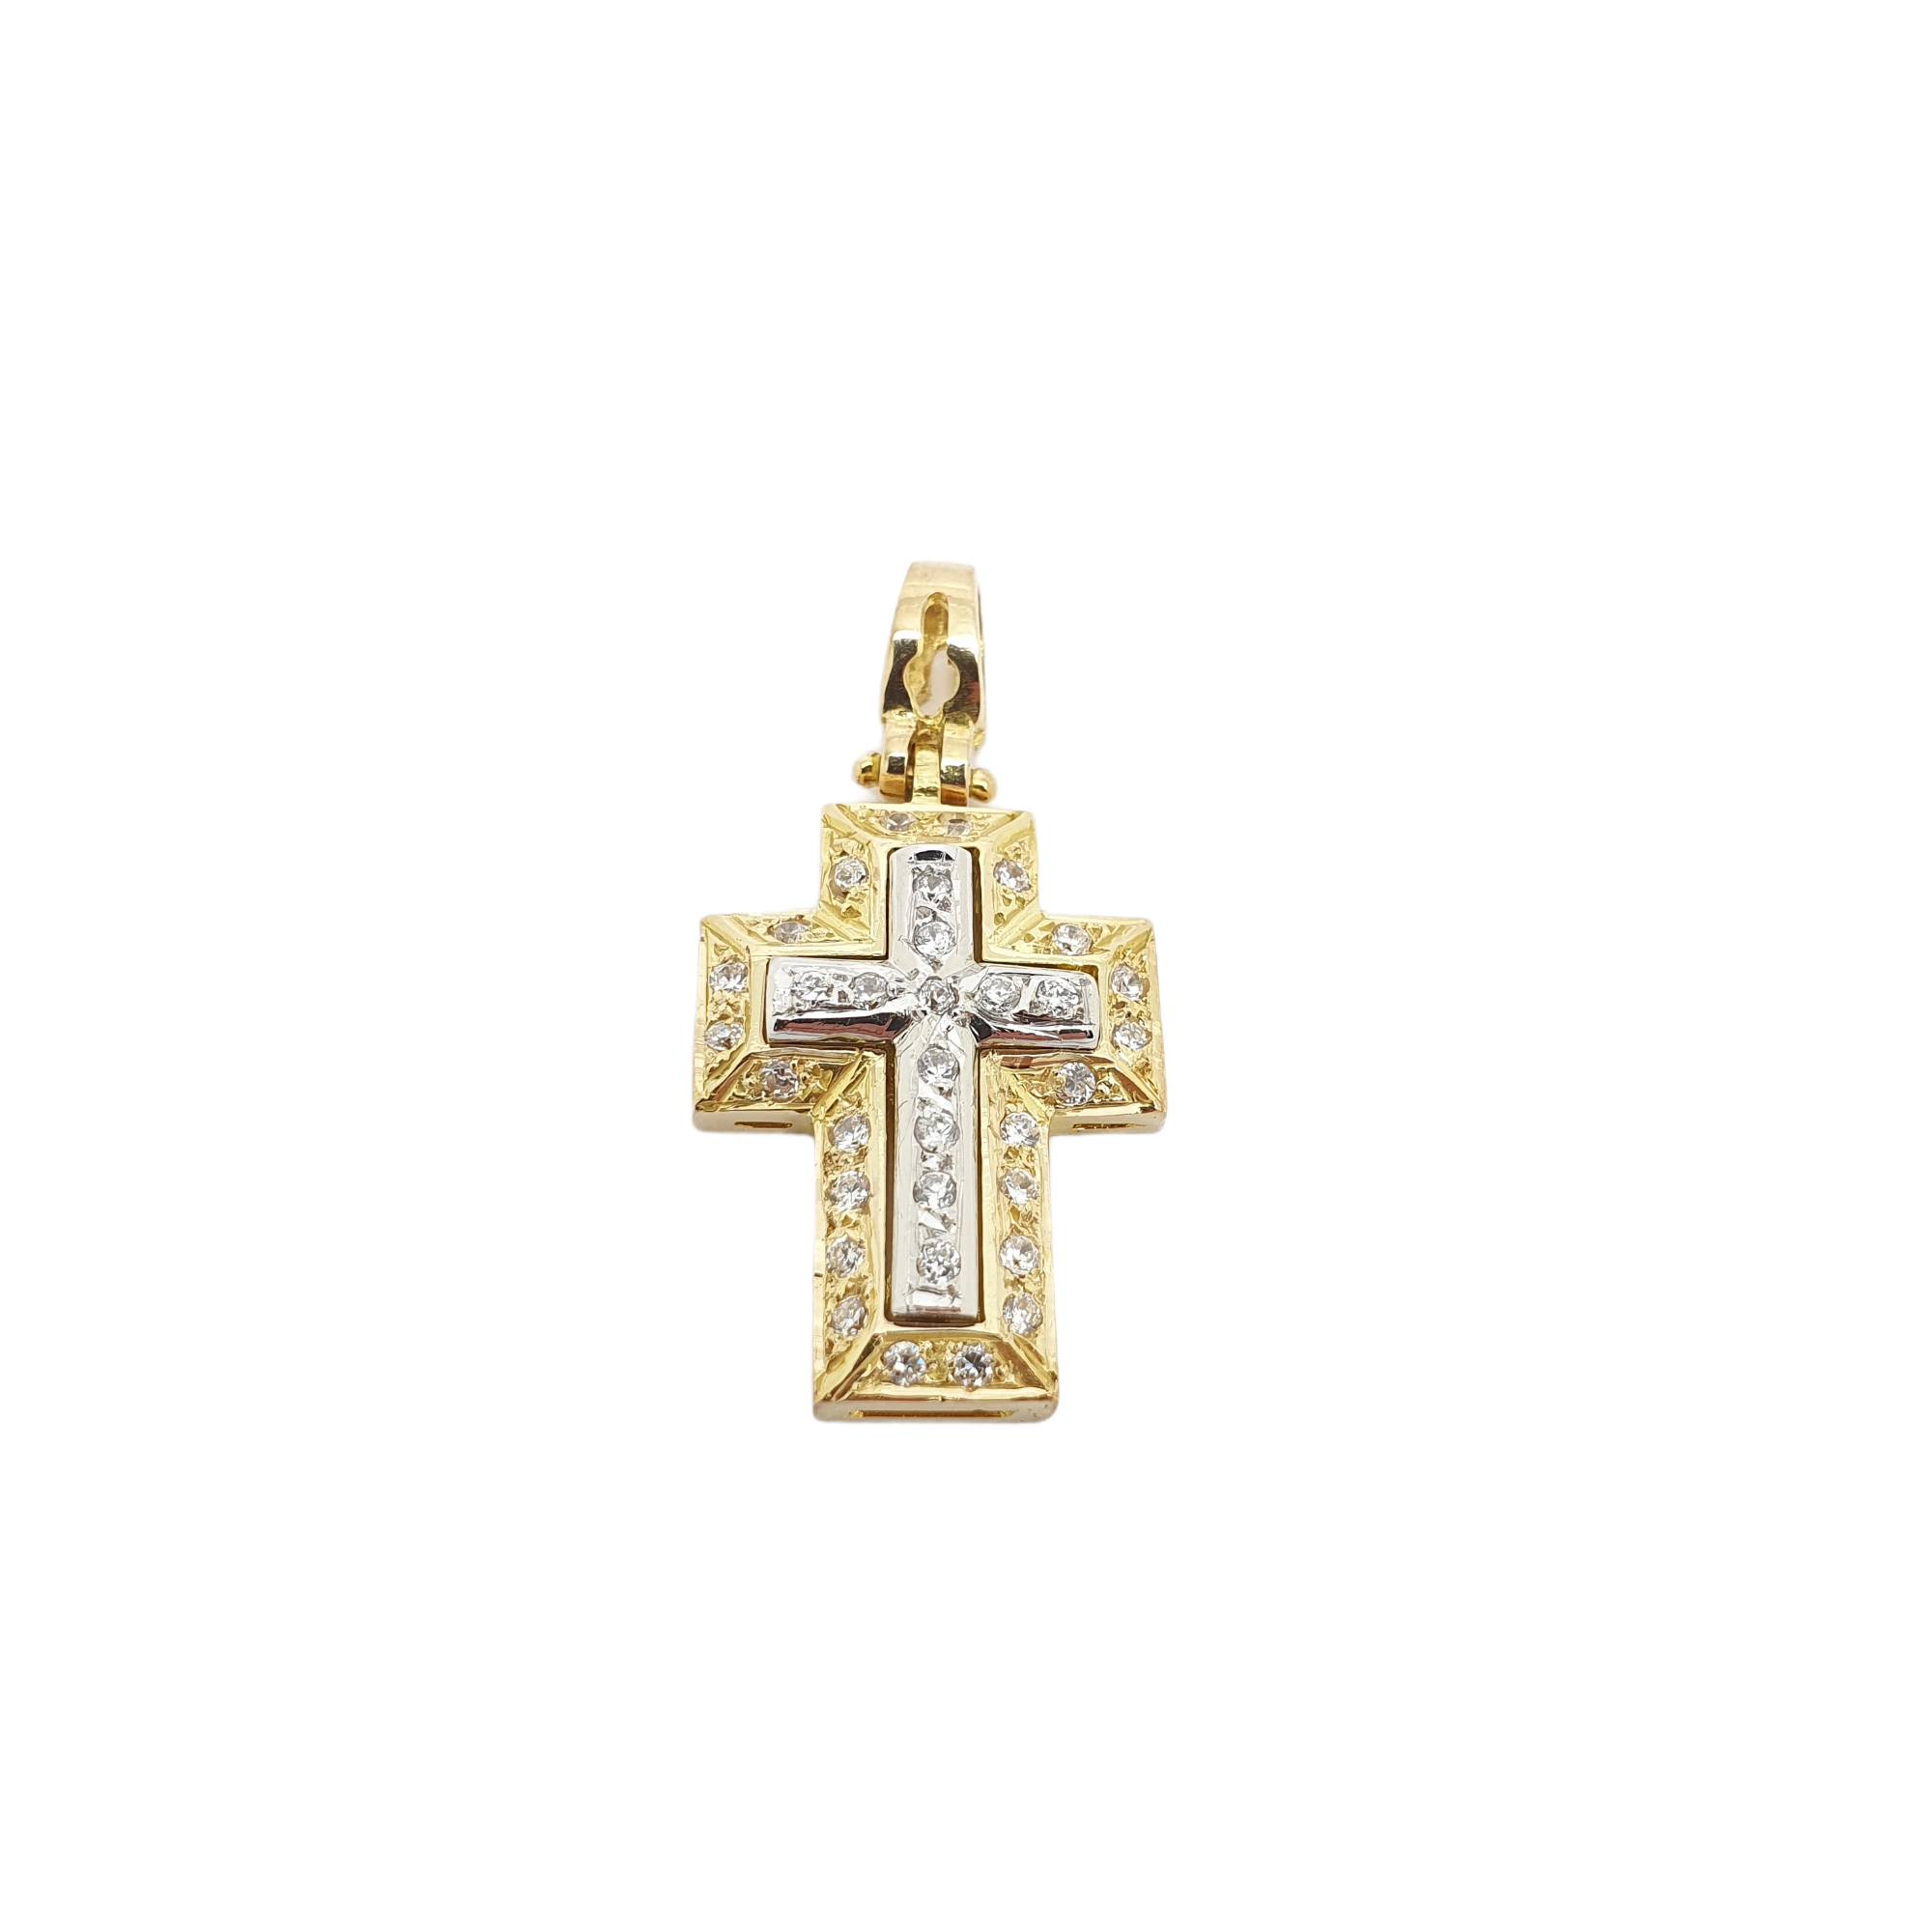 Σταυρός απο χρυσό κ14 με ενσωματωμένο σταυρό απο λευκόχρυσο κ14 με ζιργκόν (code H1849)